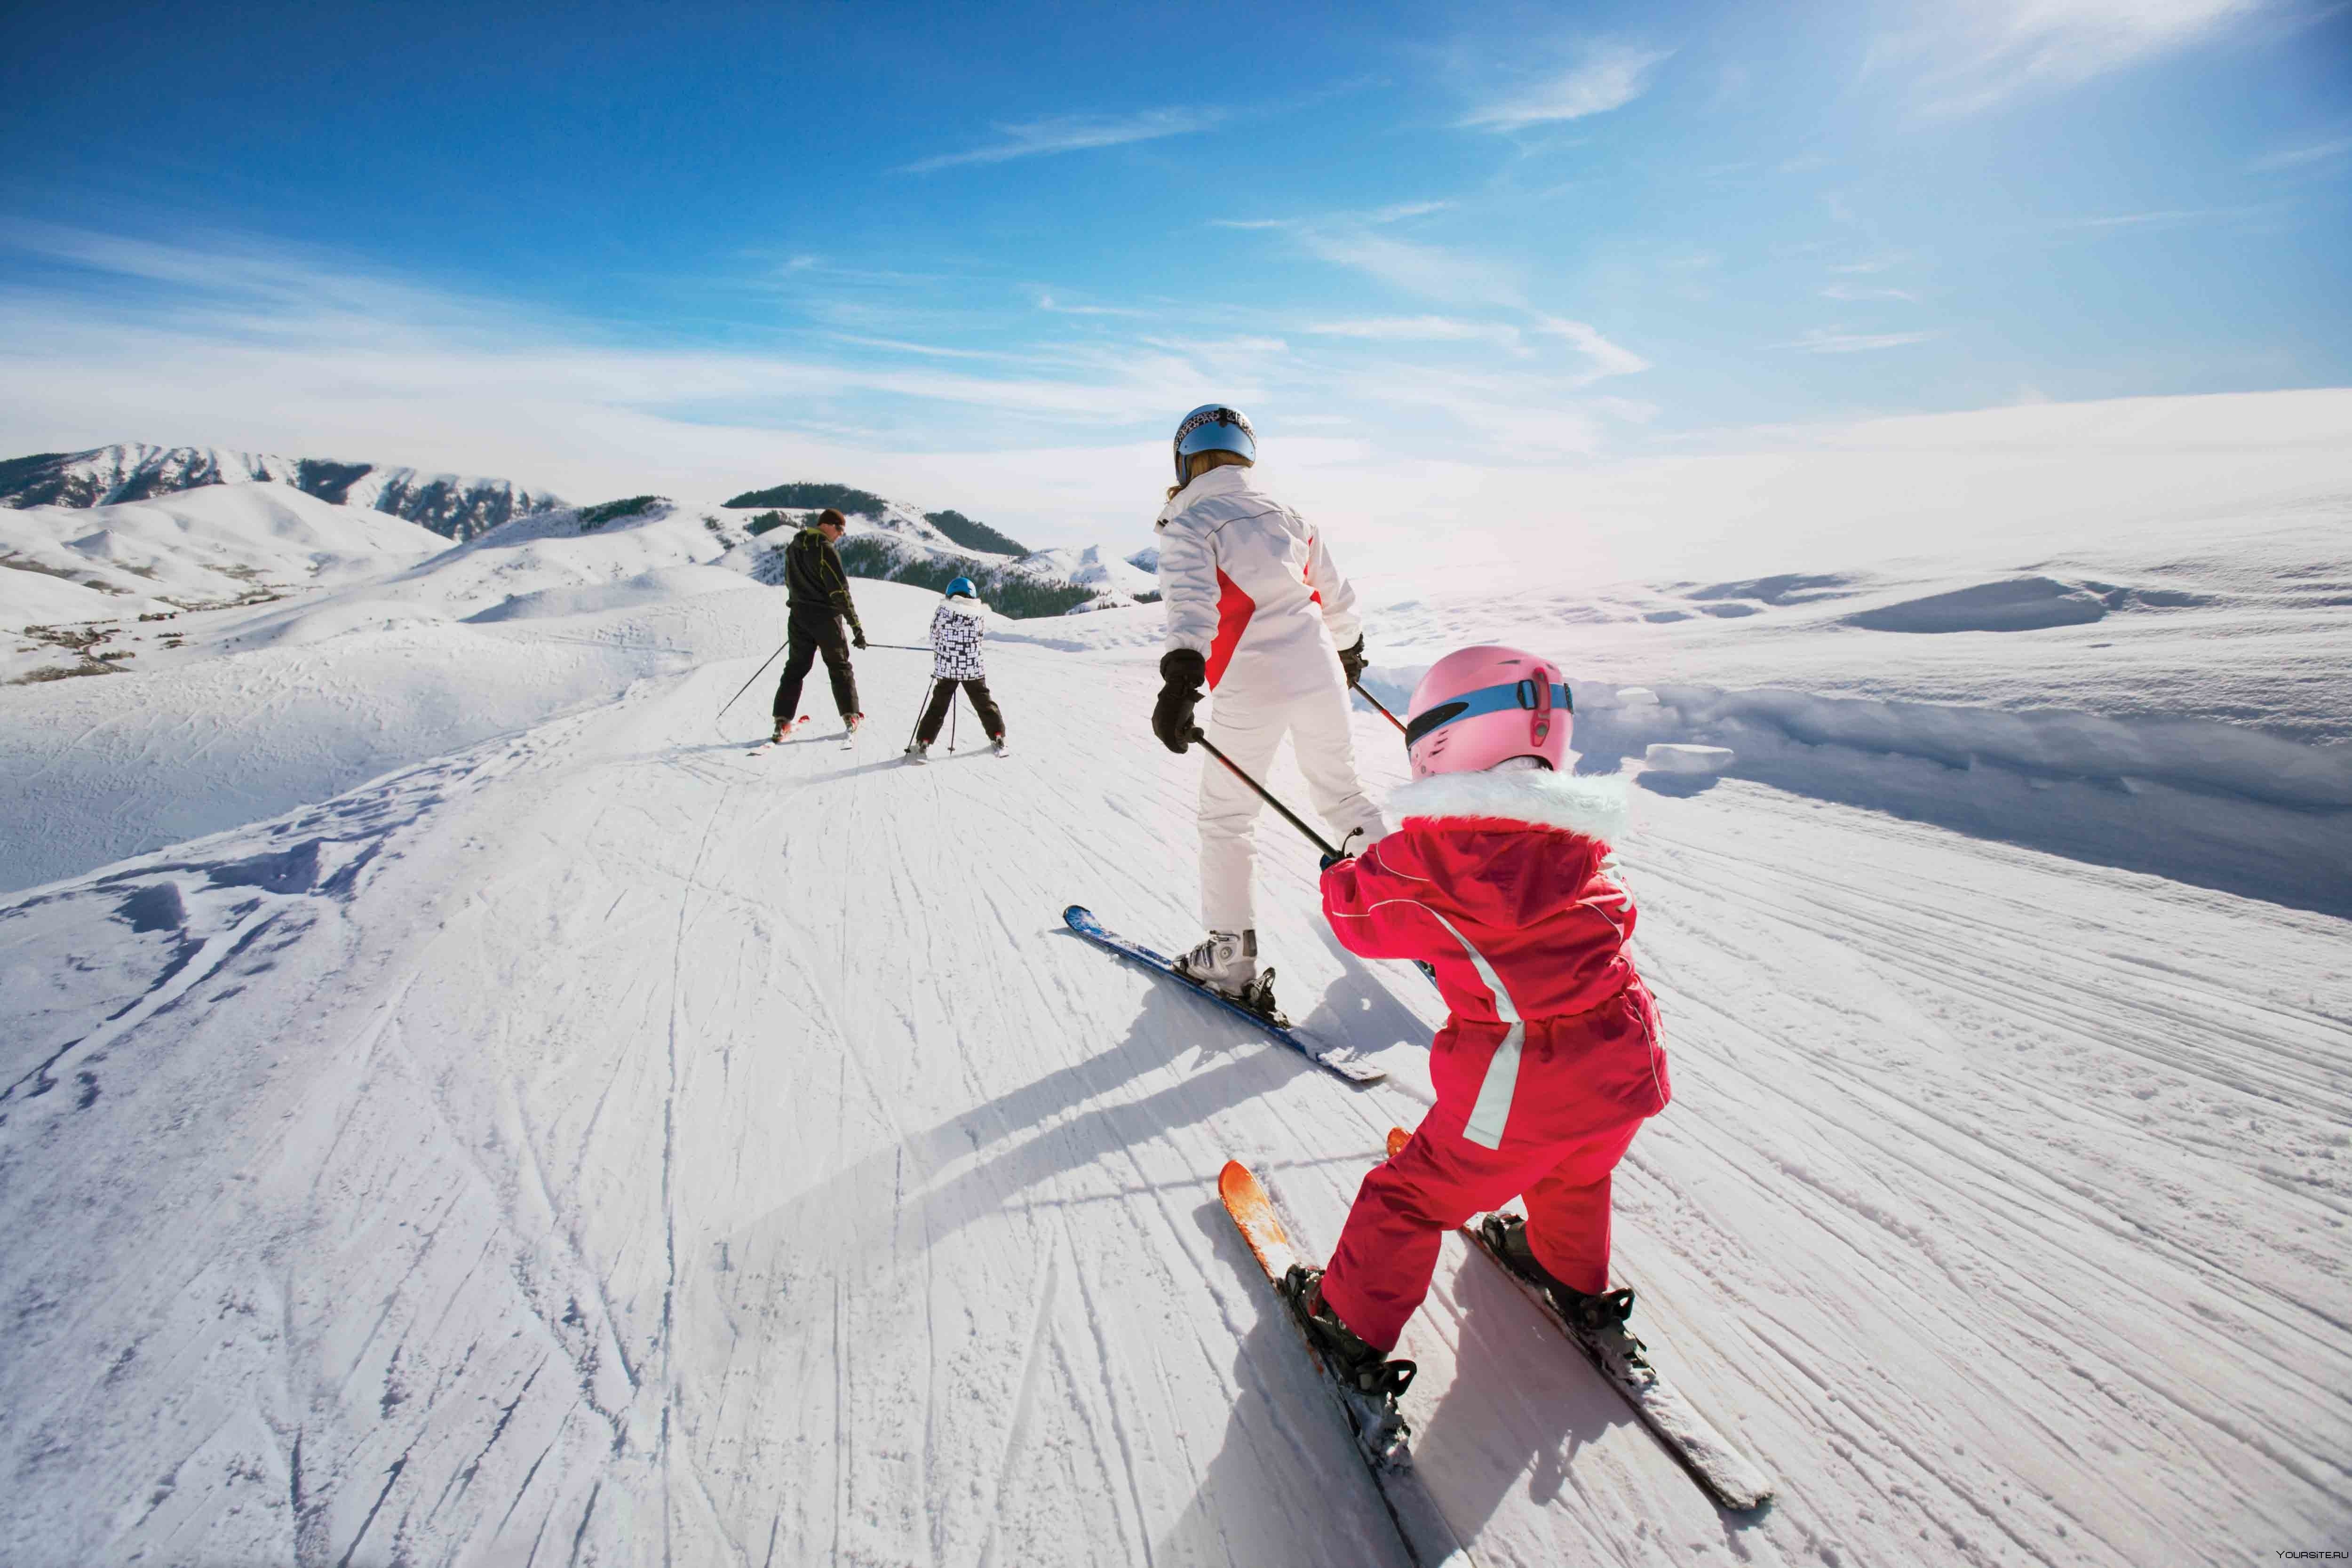 Катание на горнолыжном курорте. Горные лыжи. Катание на горных лыжах. Зимний спорт. Катание на лыжах в горах.